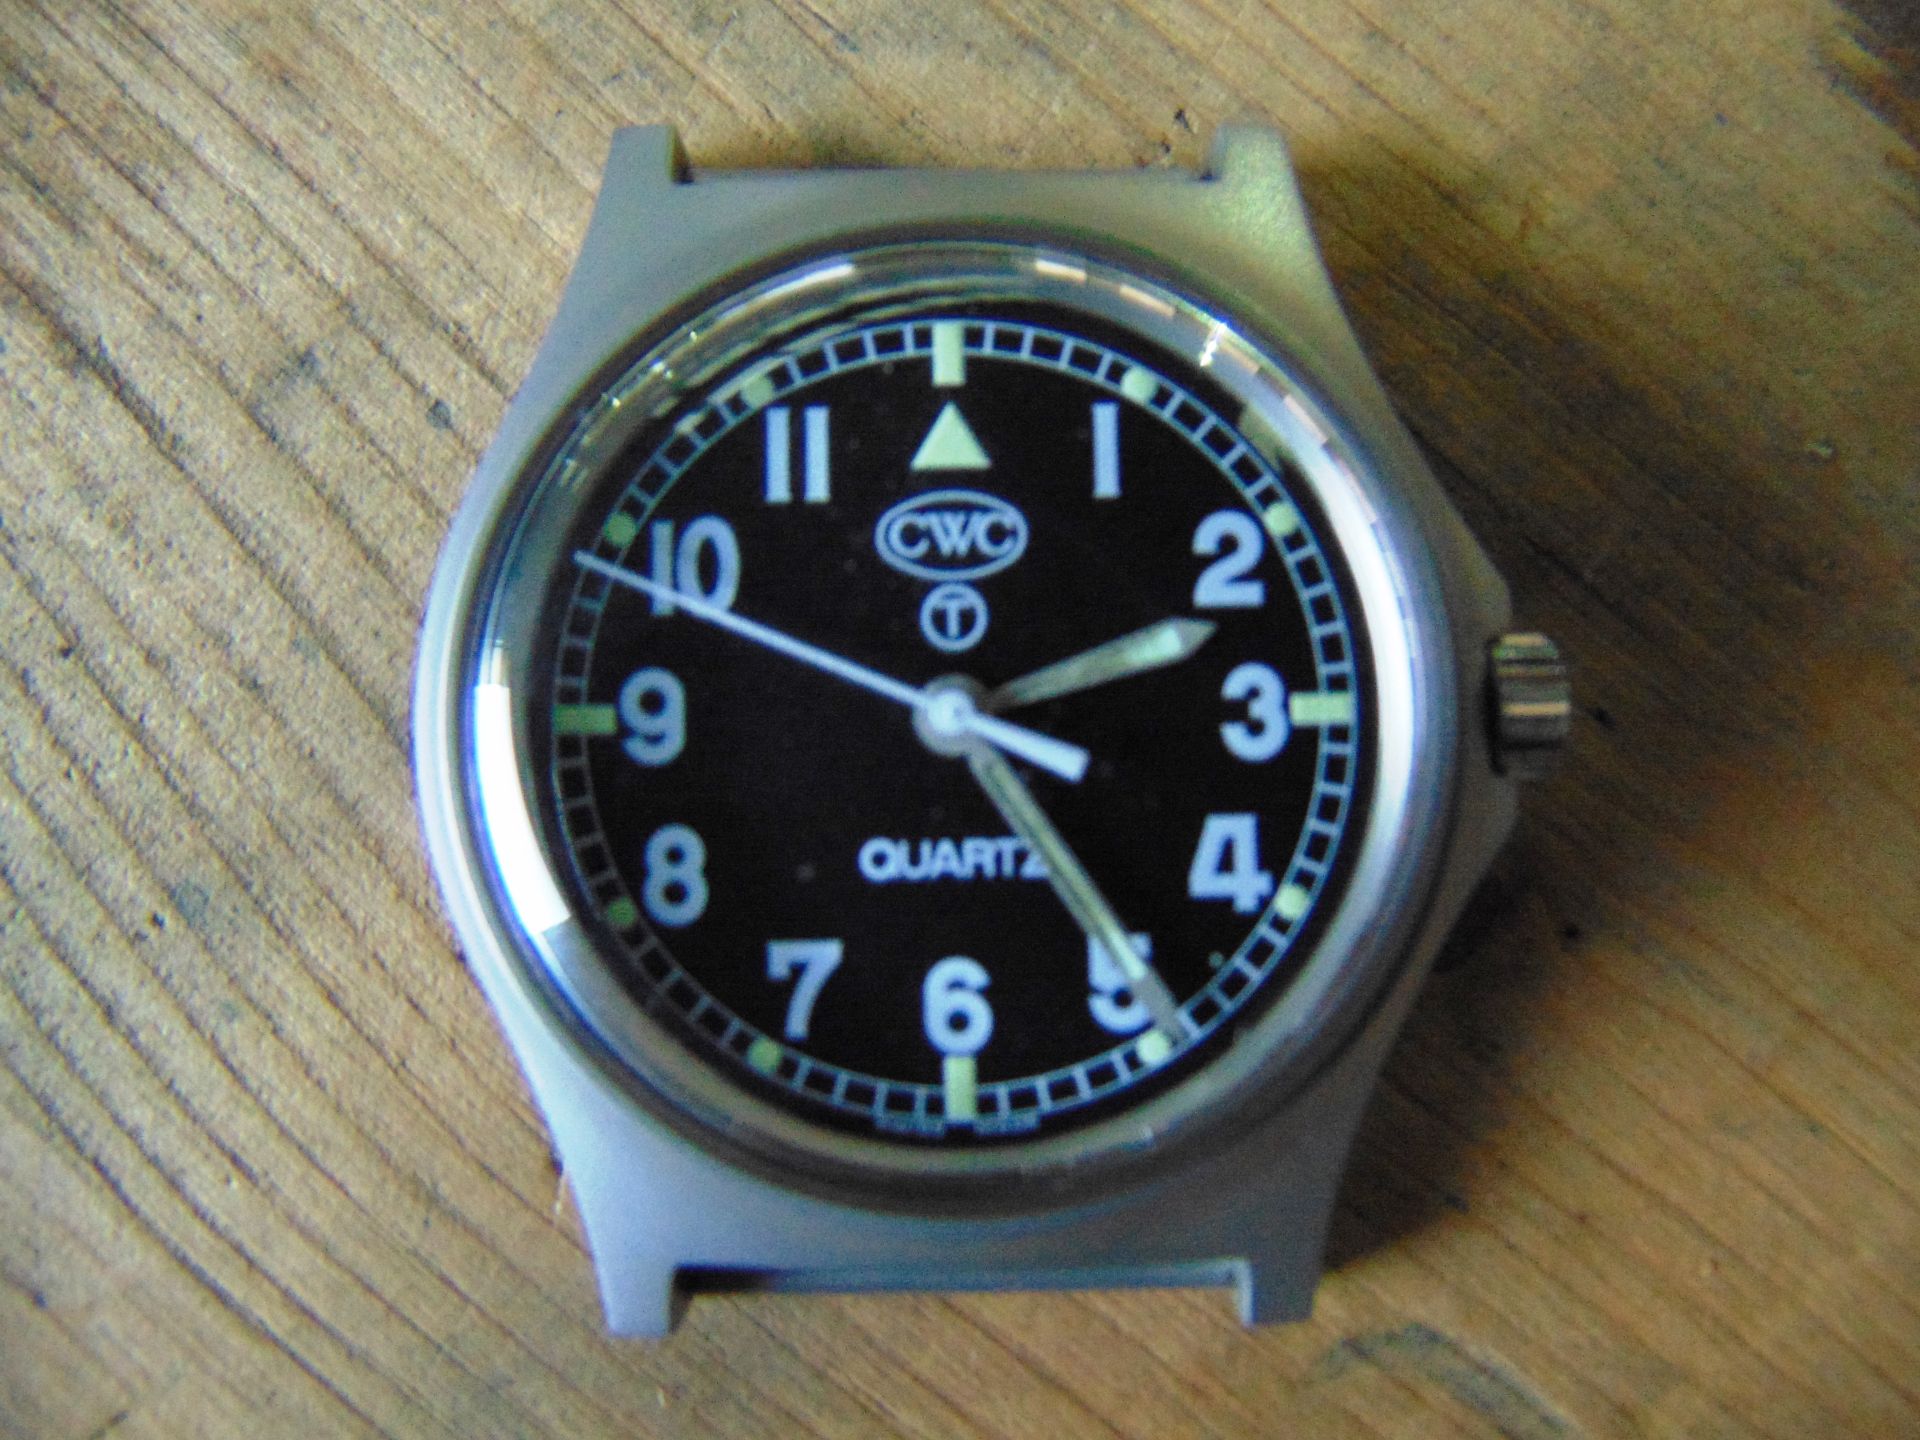 1 Genuine British Army, Unissued CWC quartz wrist watch - Image 5 of 6